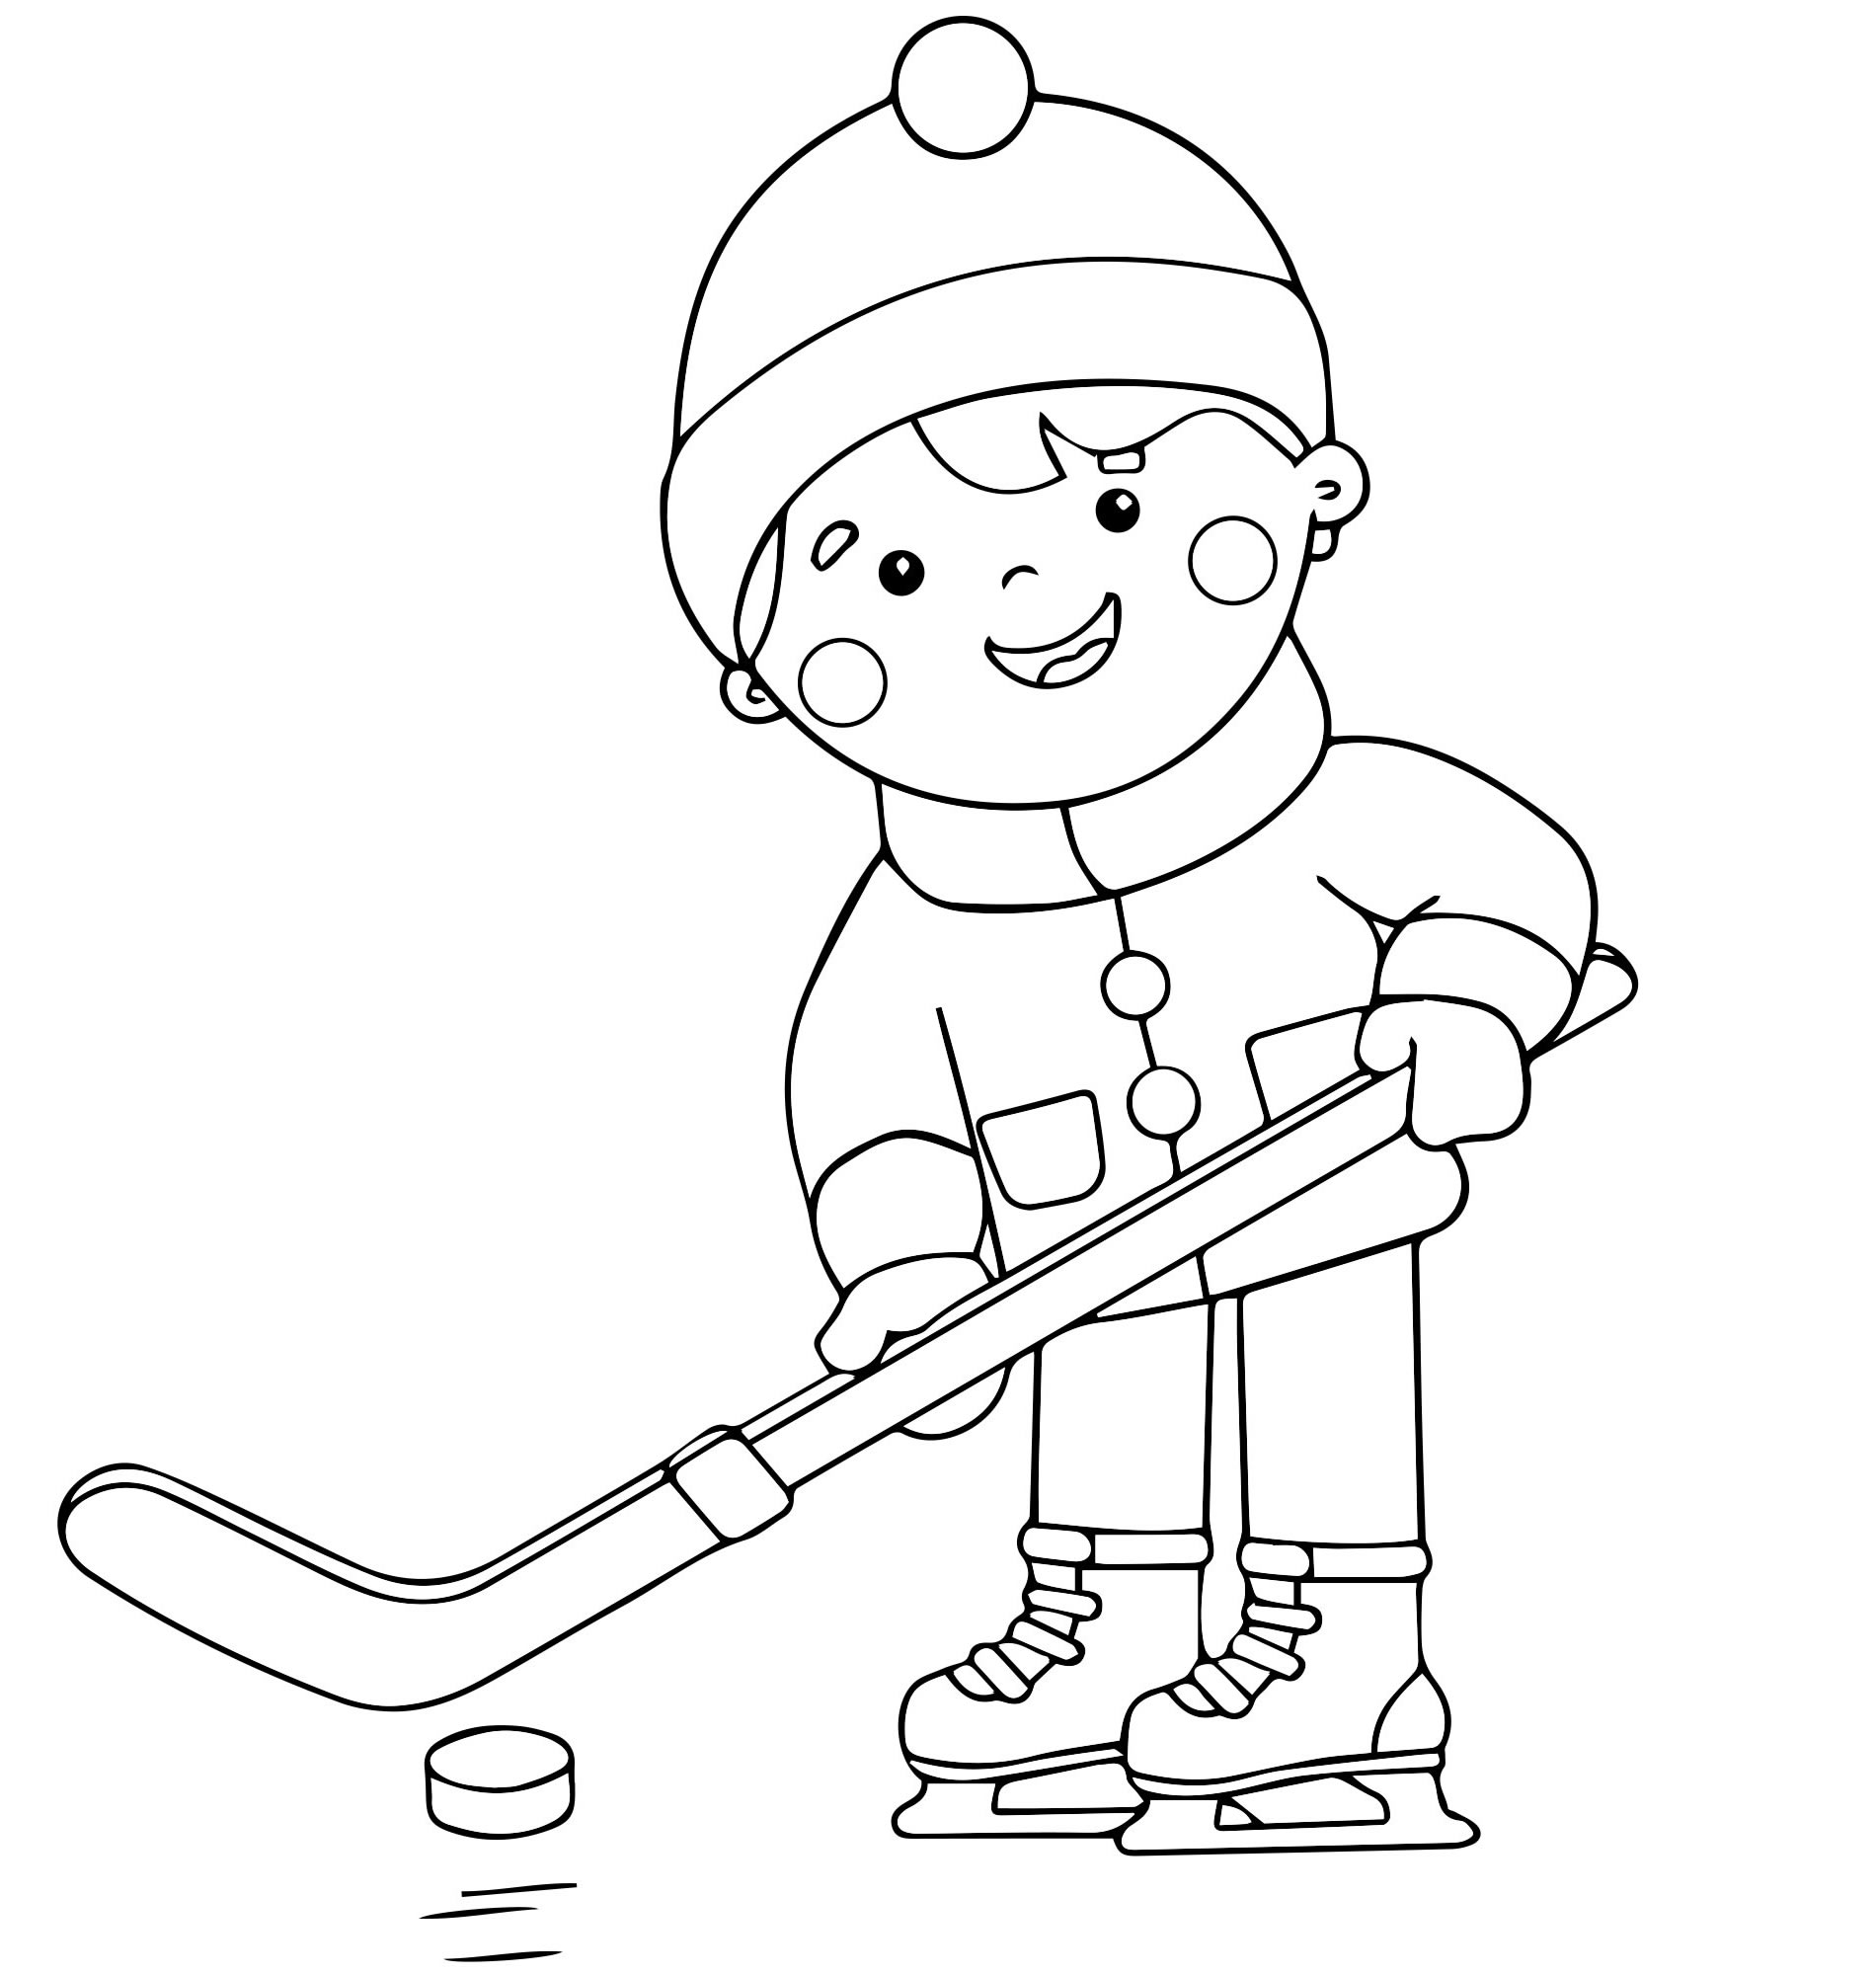 Игра в хоккей раскраска для детей